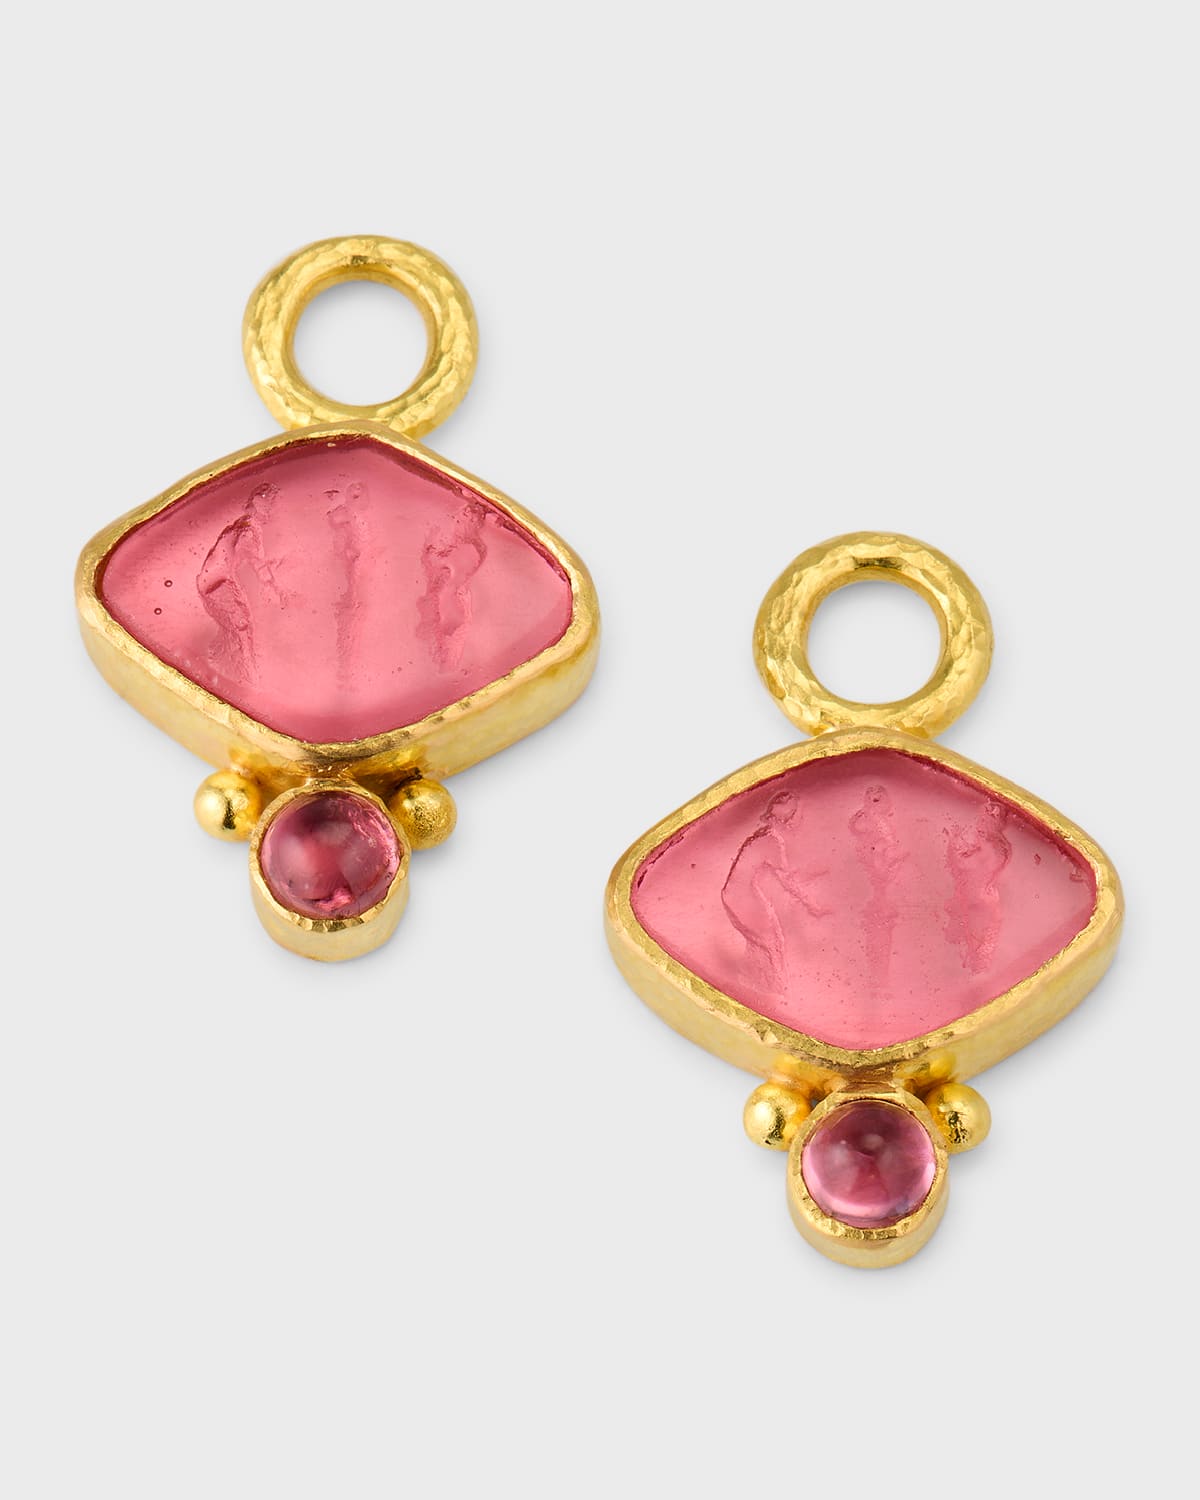 Elizabeth Locke Rombo 19k Yellow Gold Venetian Glass Intaglios Earring Pendants